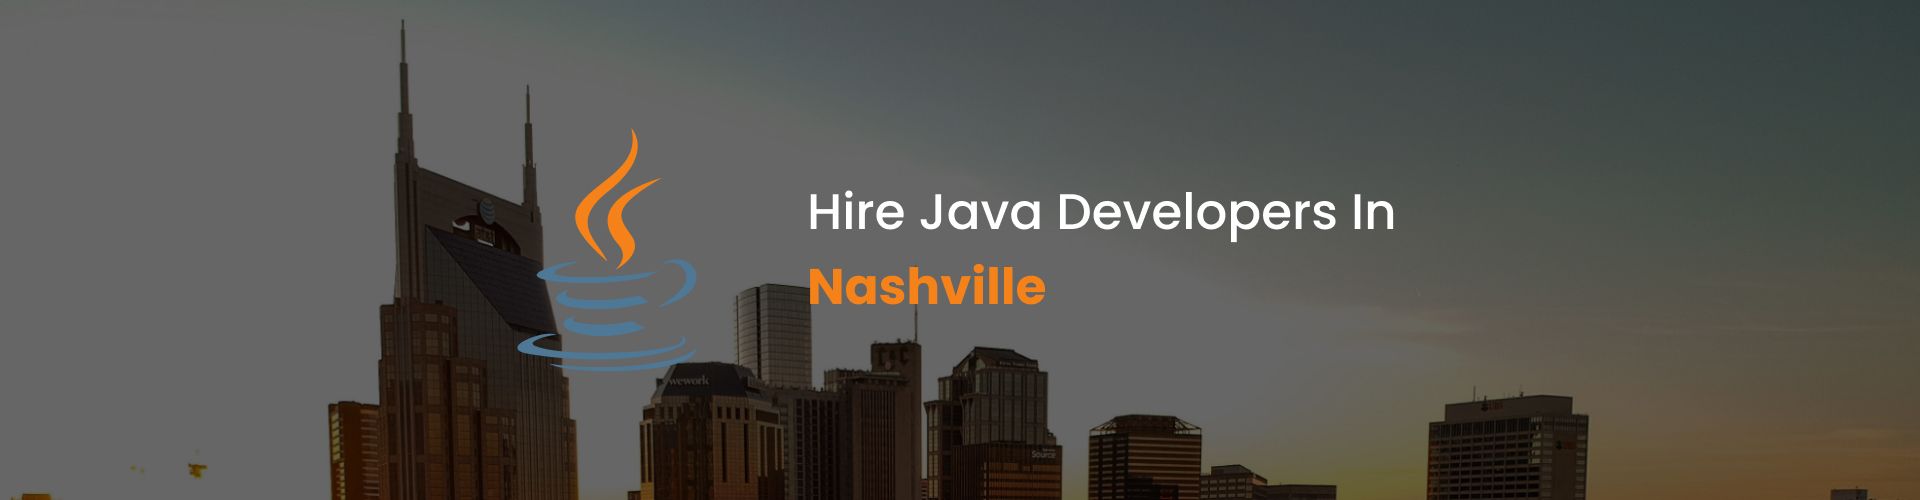 hire java developers in nashville